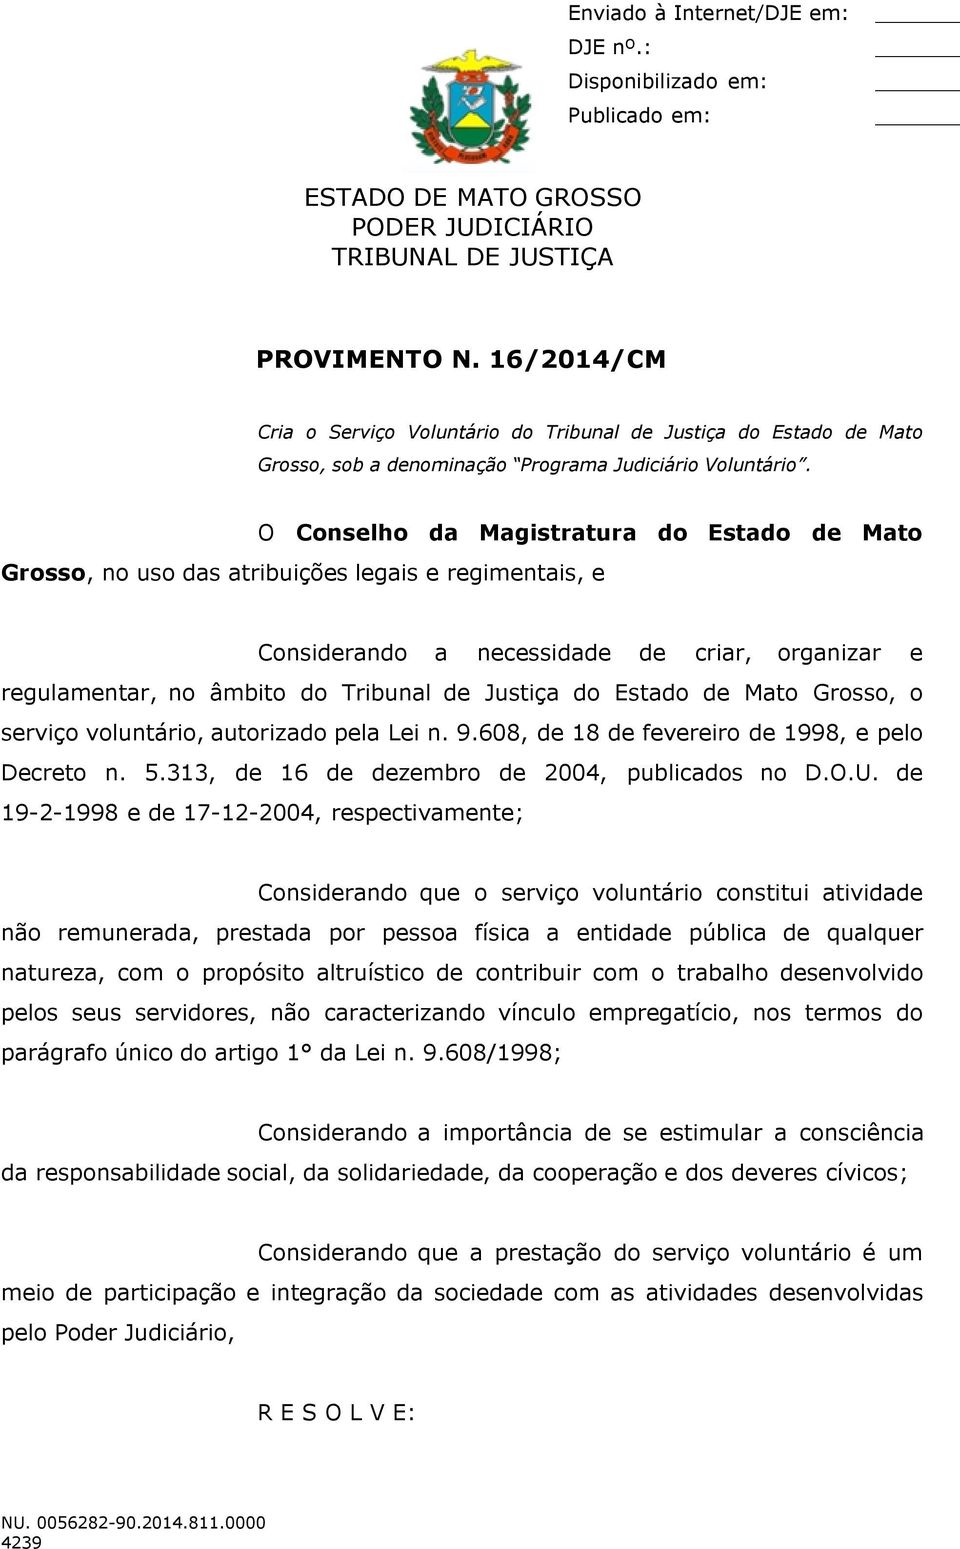 Estado de Mato Grosso, o serviço voluntário, autorizado pela Lei n. 9.608, de 18 de fevereiro de 1998, e pelo Decreto n. 5.313, de 16 de dezembro de 2004, publicados no D.O.U.